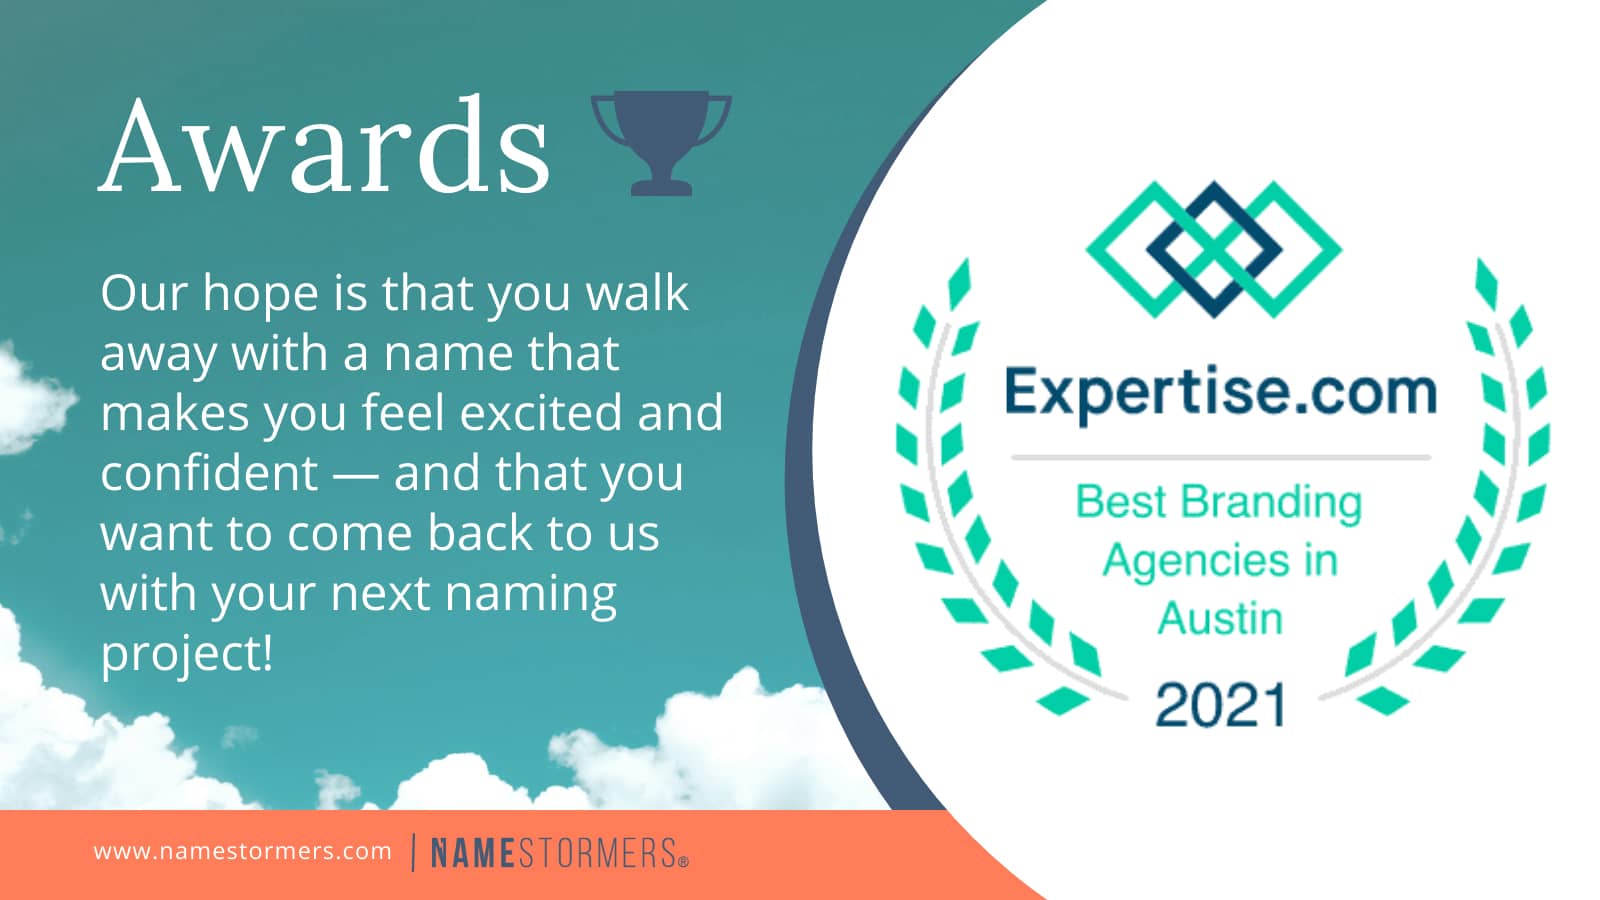 awards on expertise.com best branding